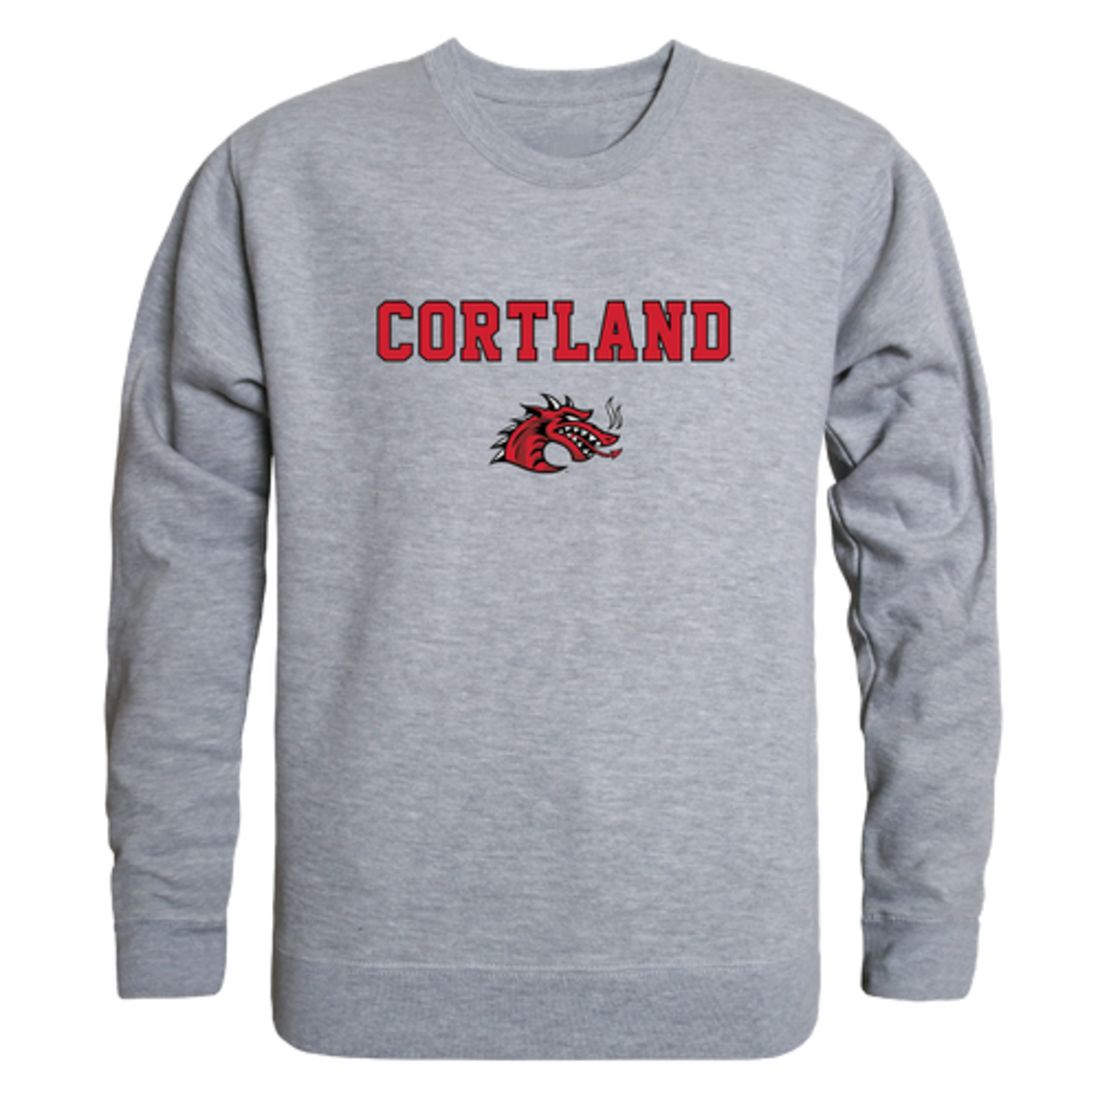 SUNY Cortland Red Dragons Campus Crewneck Sweatshirt